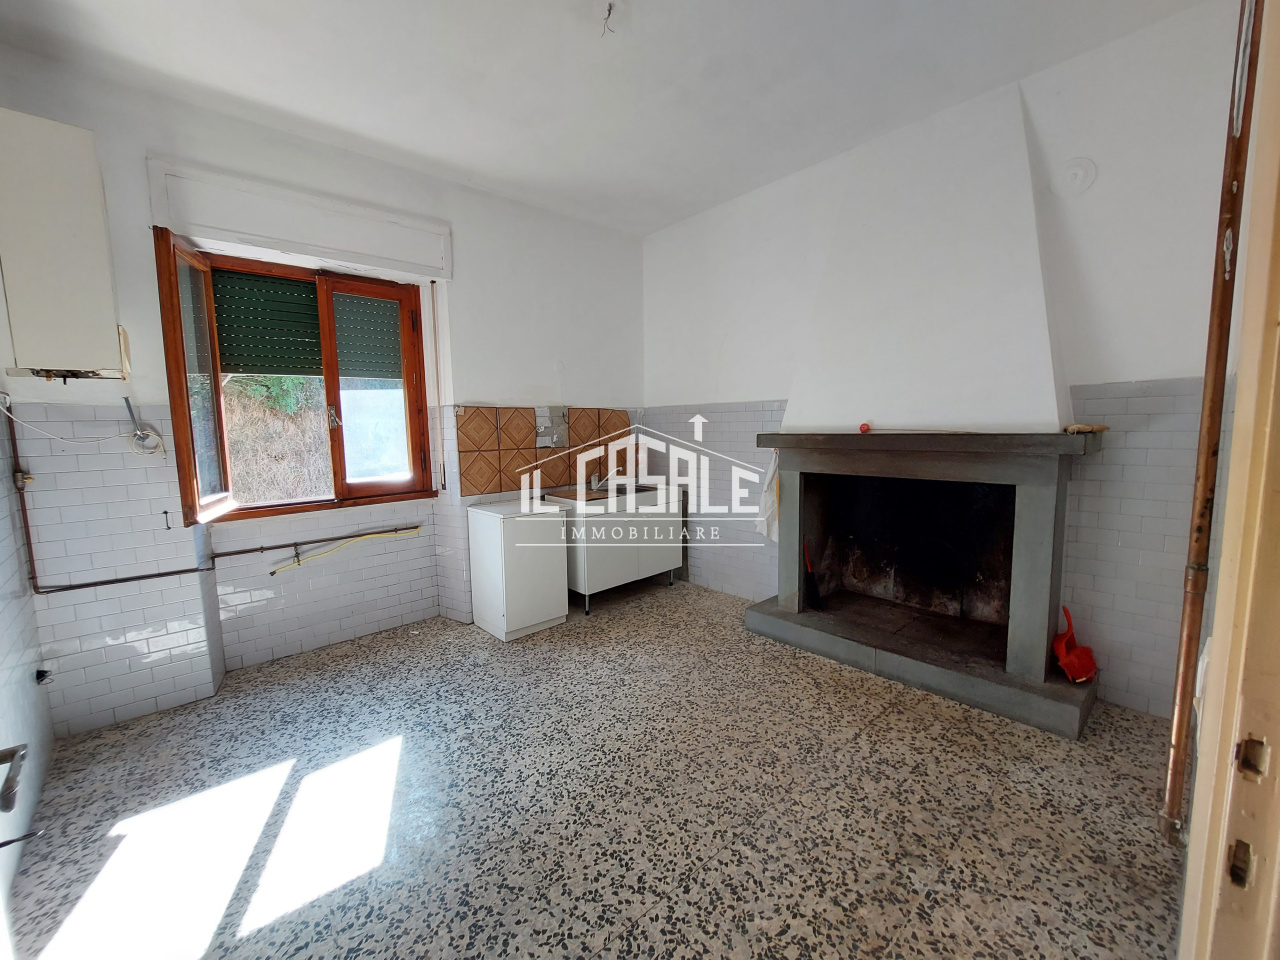 Appartamento in vendita a San Godenzo, 3 locali, prezzo € 90.000 | PortaleAgenzieImmobiliari.it